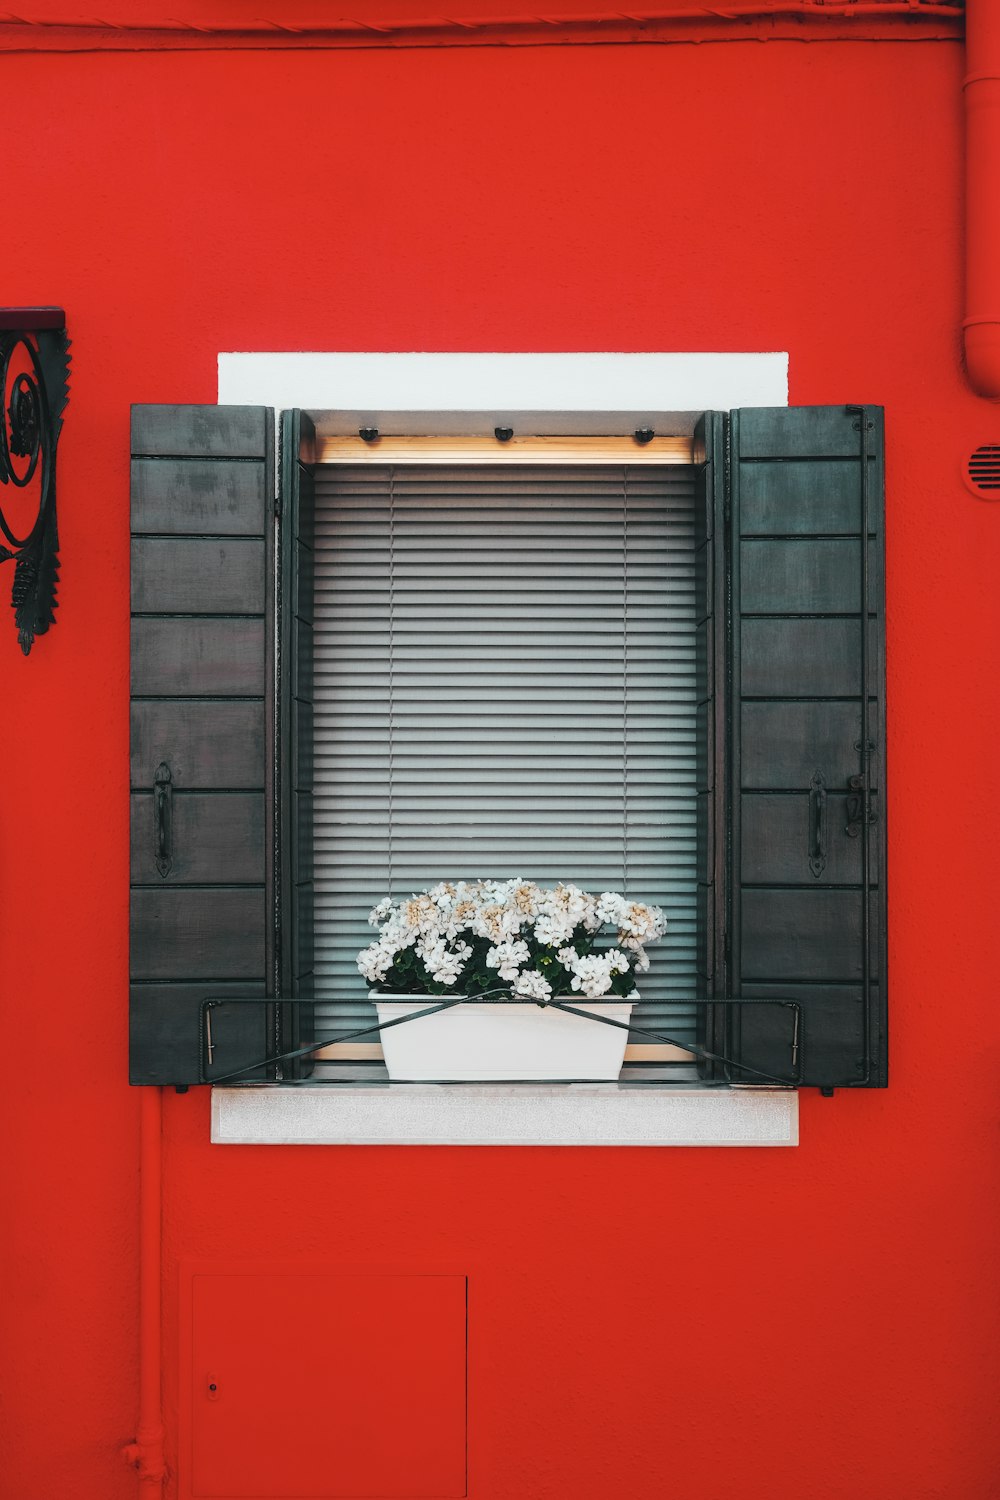 moldura da janela de madeira preta com flores brancas e vermelhas